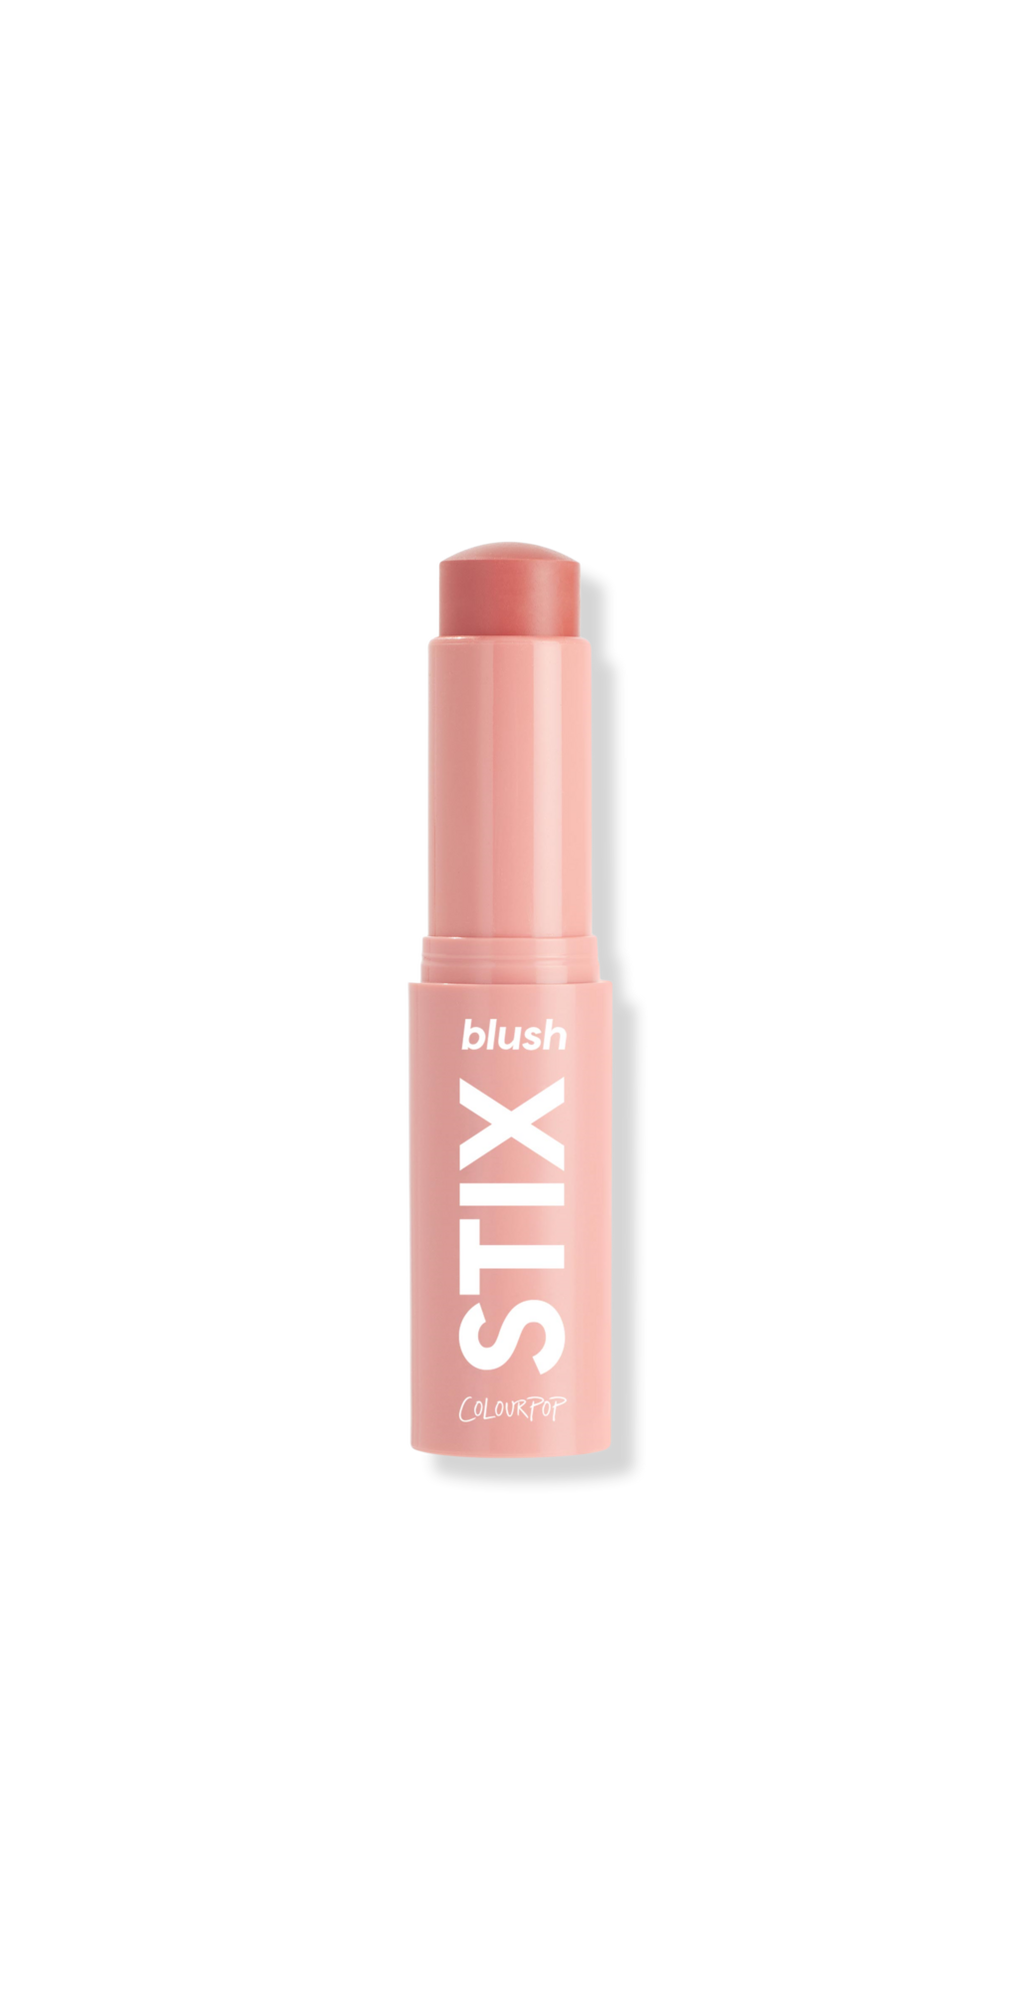 Colourpop Blush Stix - 25/8 - 0.28oz